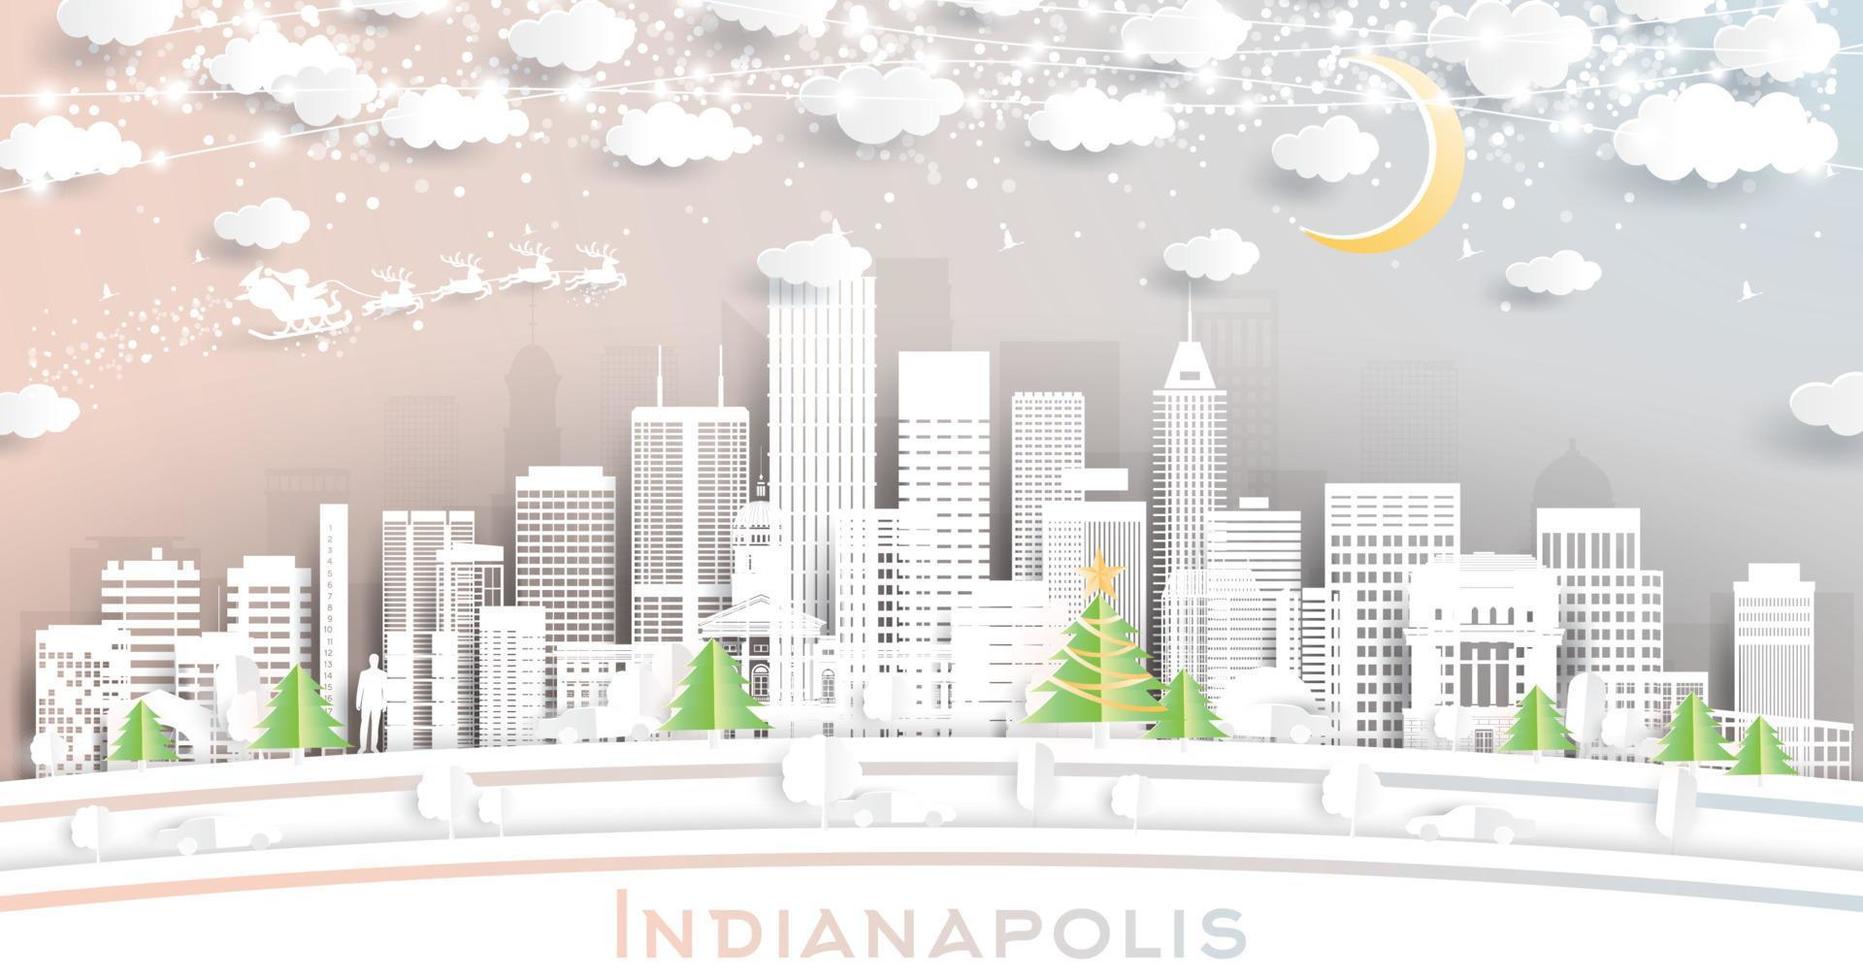 Indianapolis Indiana Verenigde Staten van Amerika stad horizon in papier besnoeiing stijl met sneeuwvlokken, maan en neon guirlande. vector